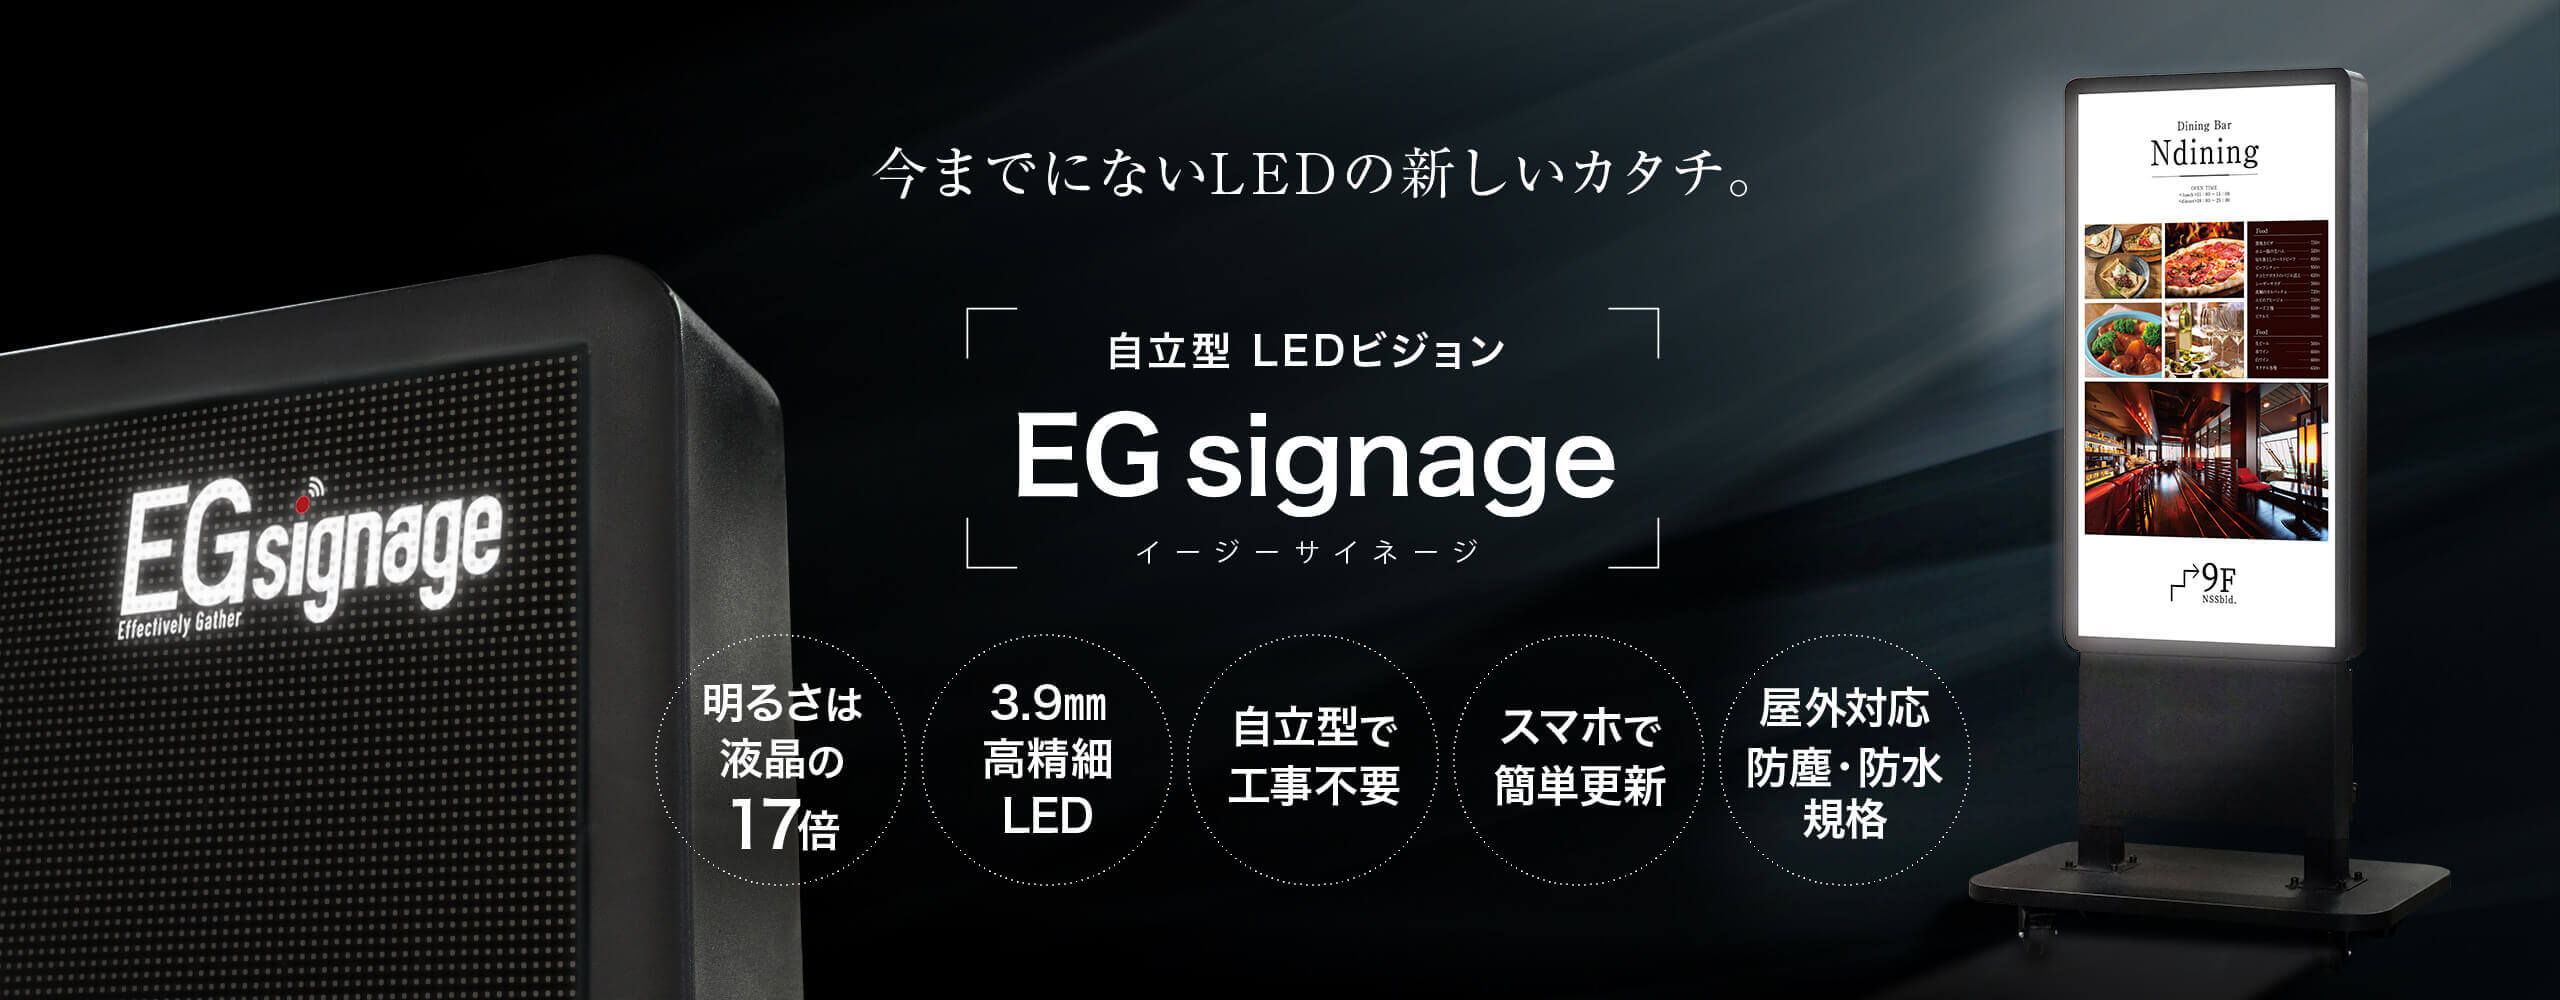 自立型LEDビジョン EGsignage